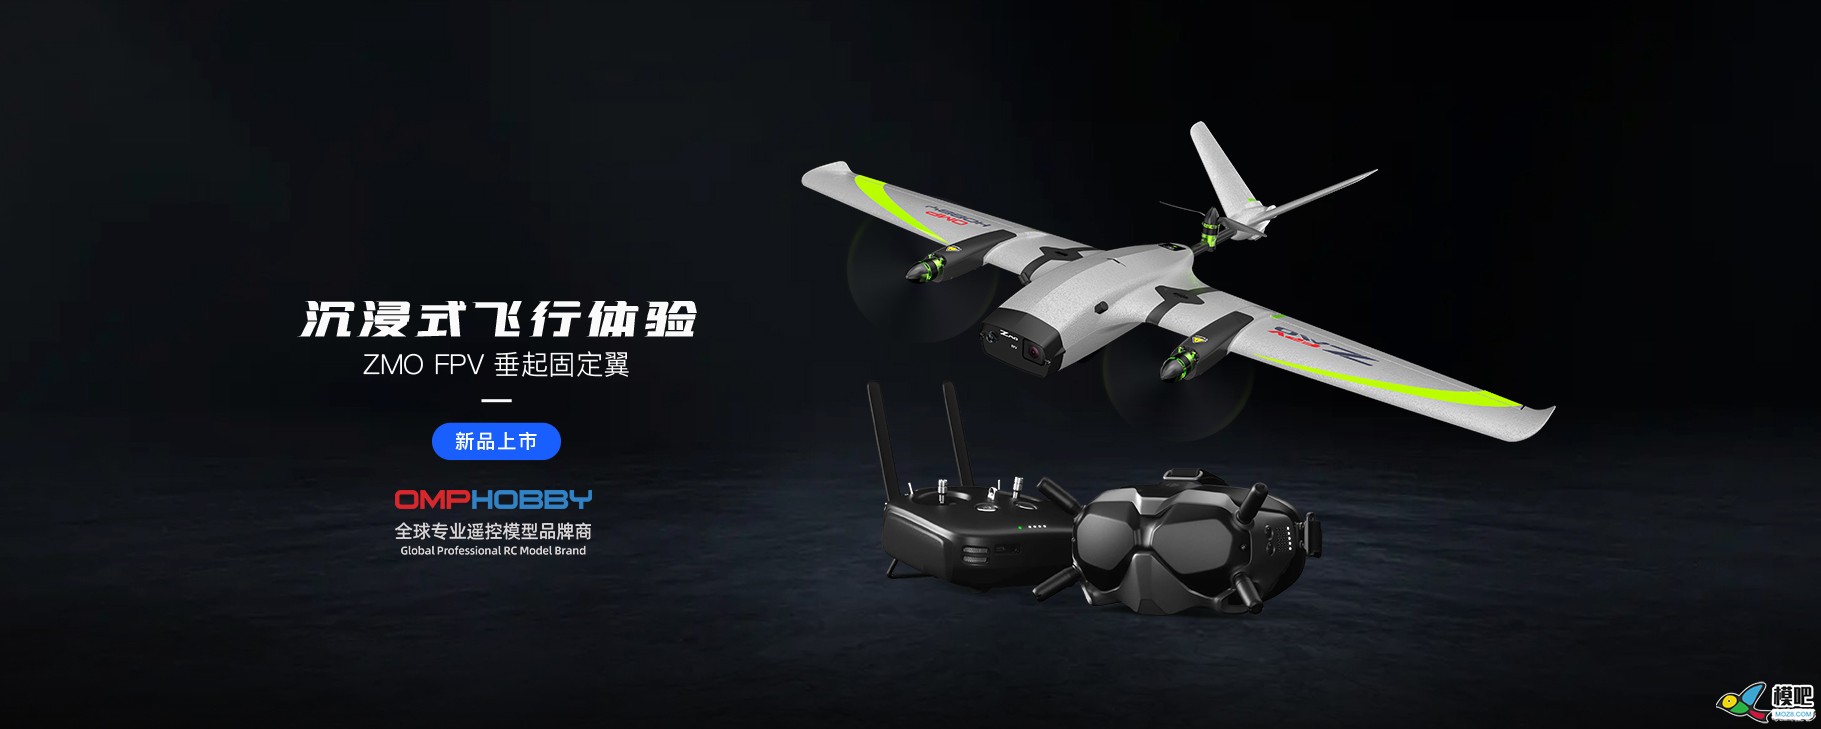 潮玩无人机-固定翼垂起FPV【zmo】| 全新发售 无人机,航模,固定翼,飞手,潮玩 作者:边锋领域 8468 